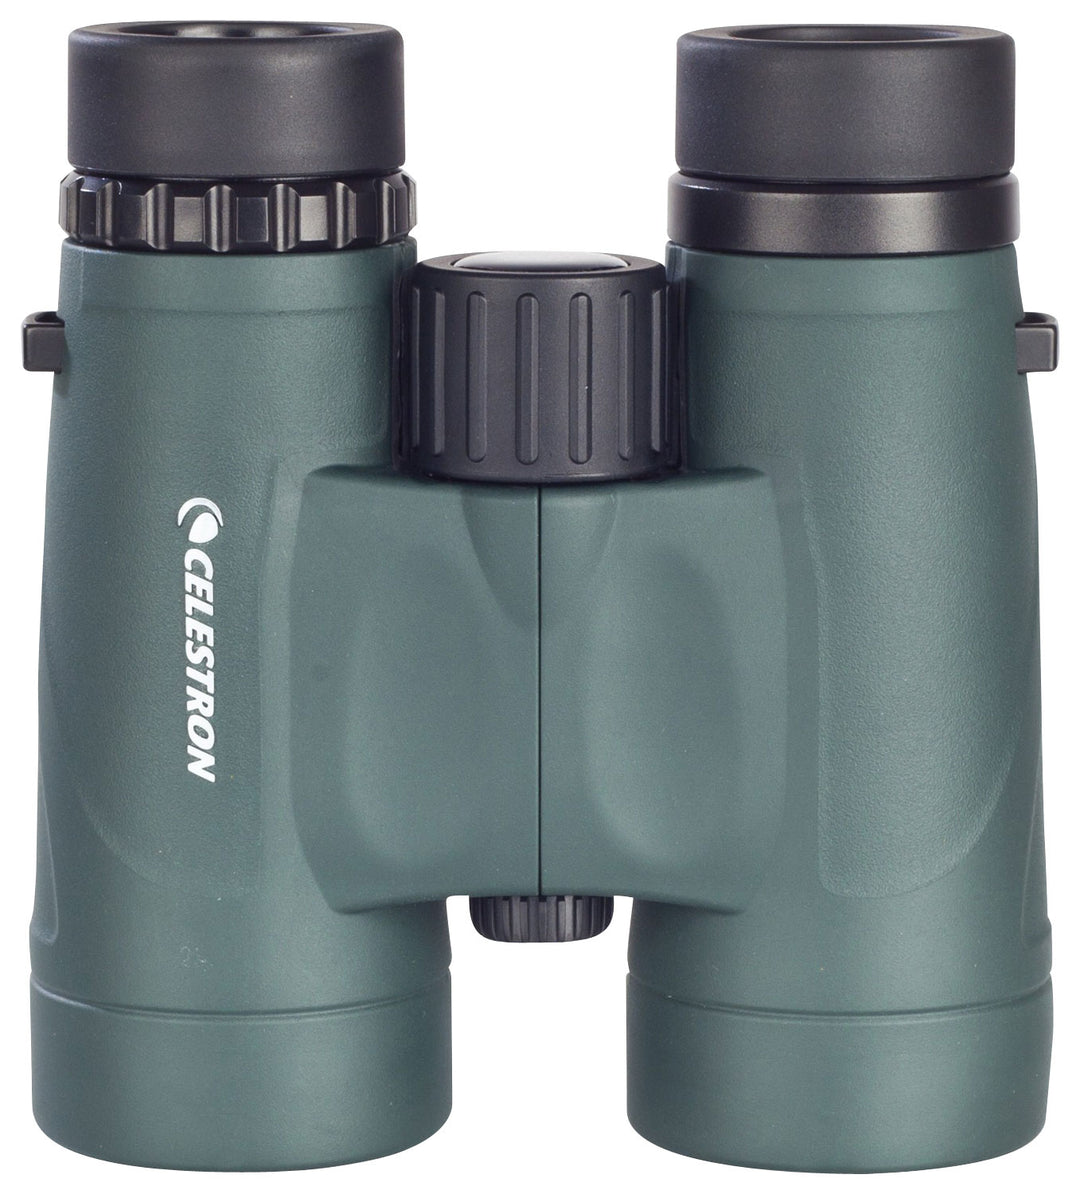 Celestron - Nature DX 10 x 42 Waterproof Binoculars - Green_0